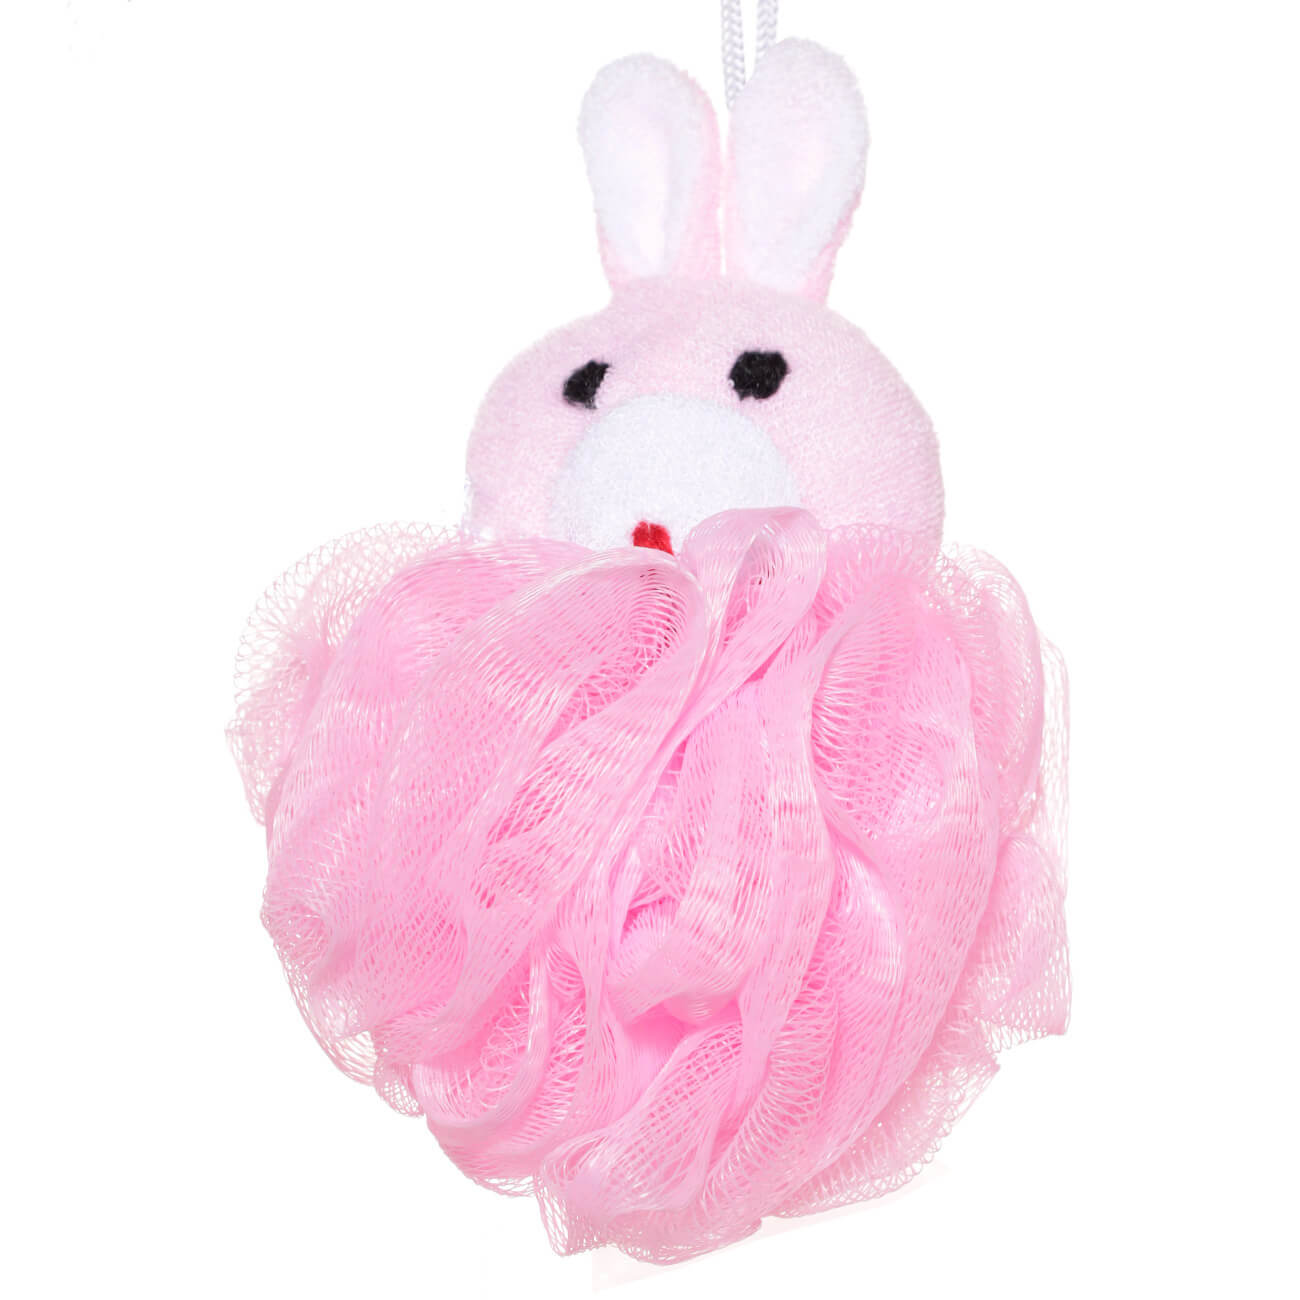 Мочалка для мытья тела, 12 см, детская, полиэтилен/полиэстер, розовая, Заяц, Rabbit мочалка brillantine из рами с ручками розовая 10х63 см